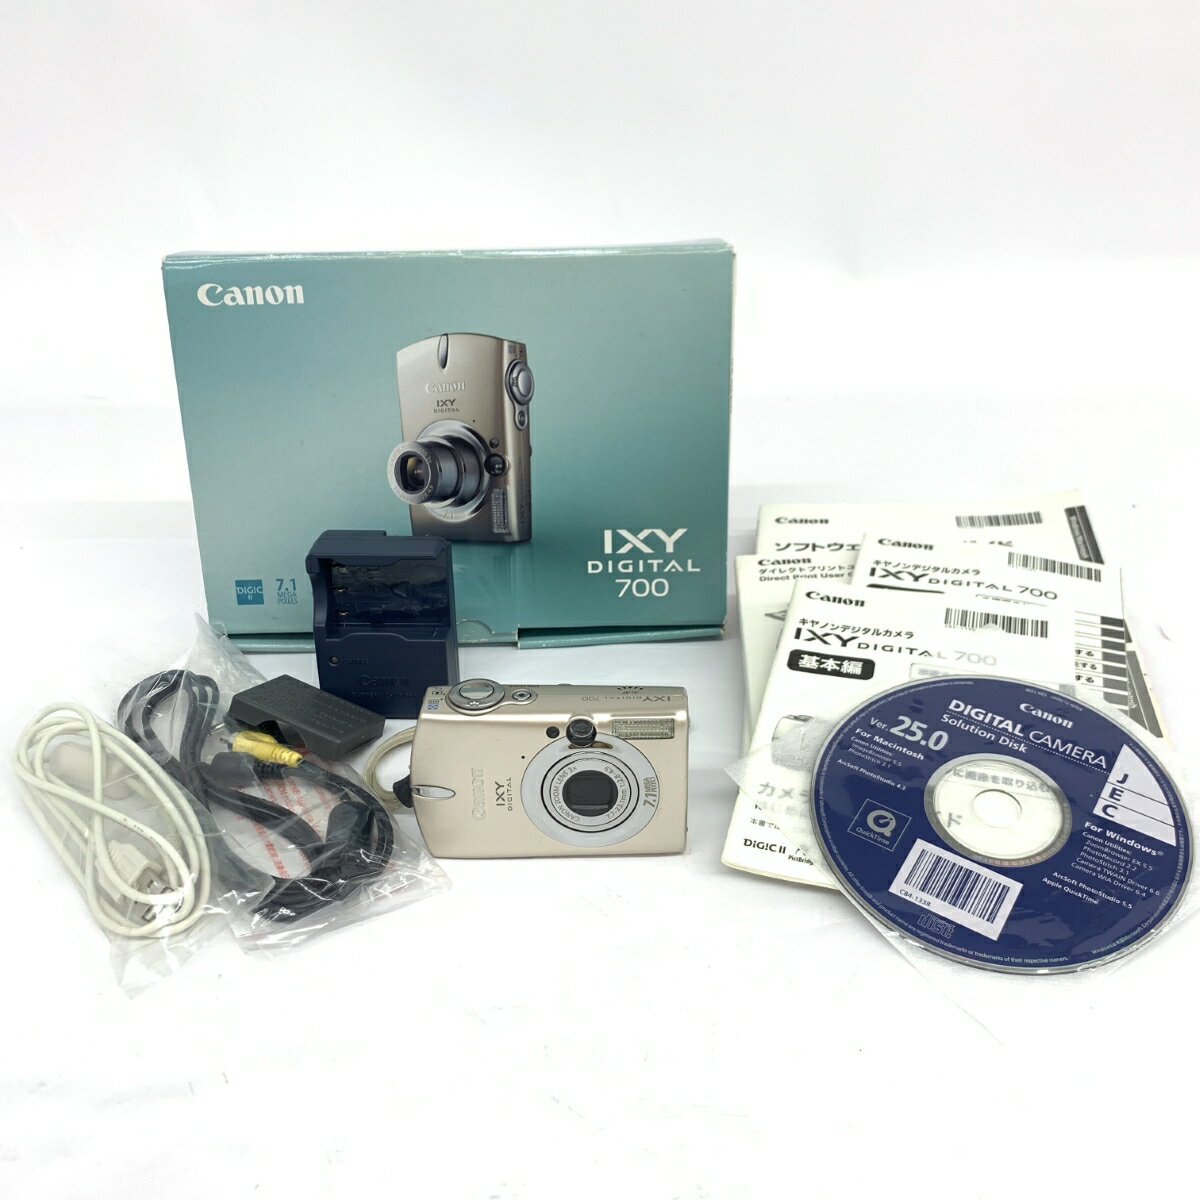 Canon キヤノン デジタルカメラ IXY DIGITAL 700 シルバーカラー 【中古】